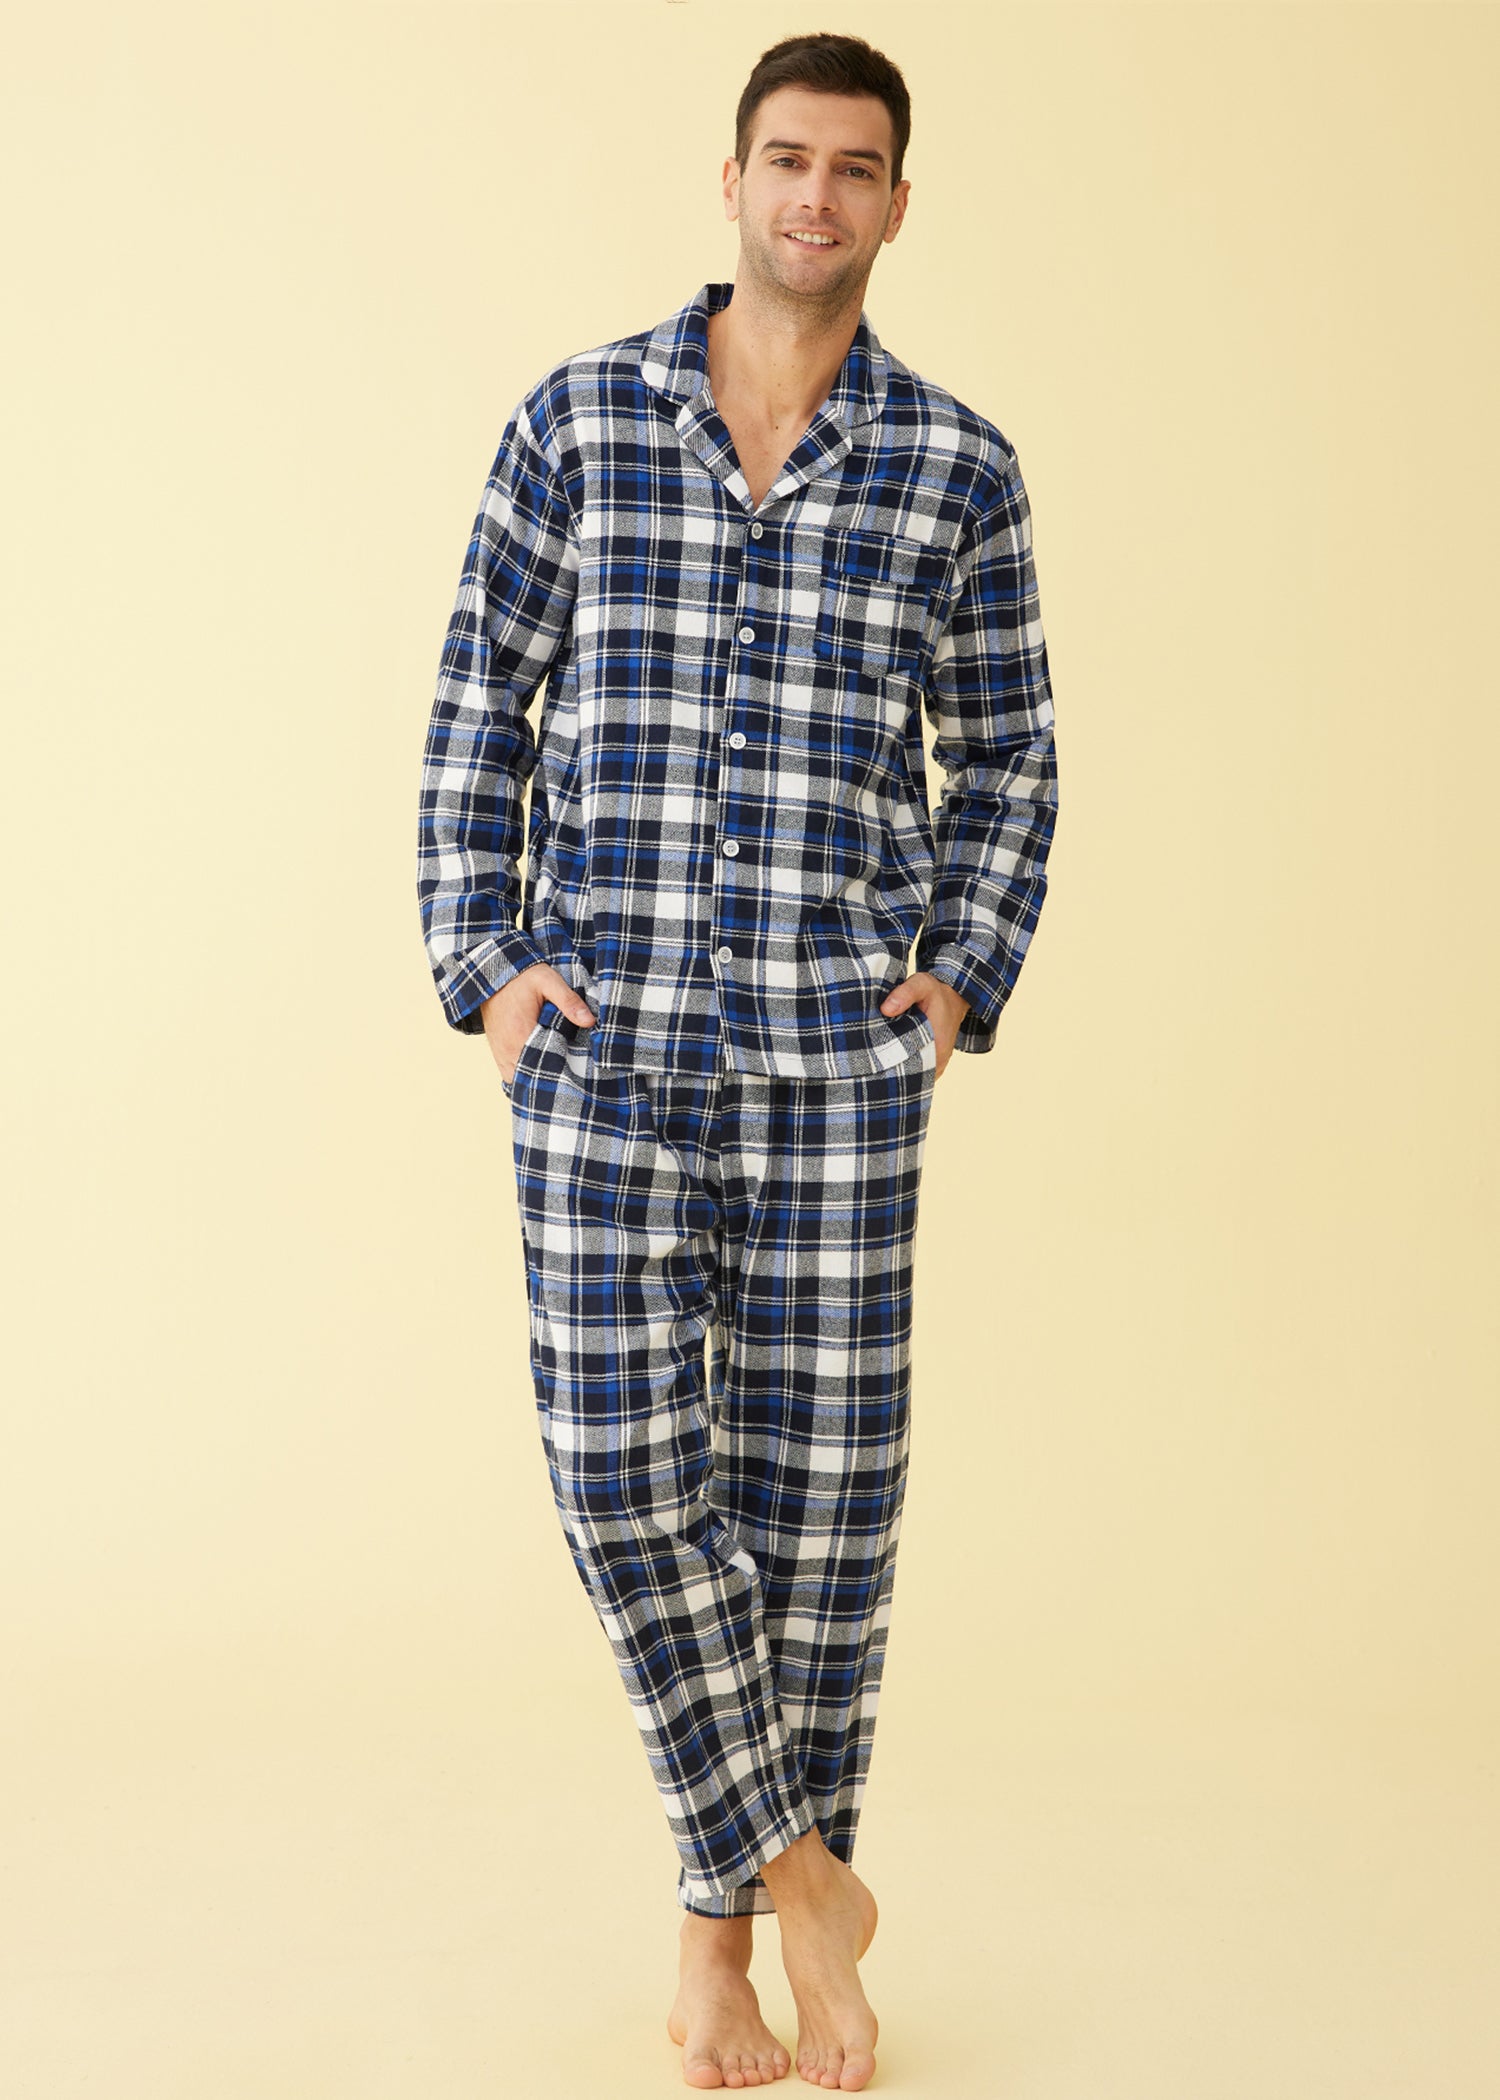 Wholesale Men's 100% Cotton Pajama Set Long Sleeve Pajamas Tops